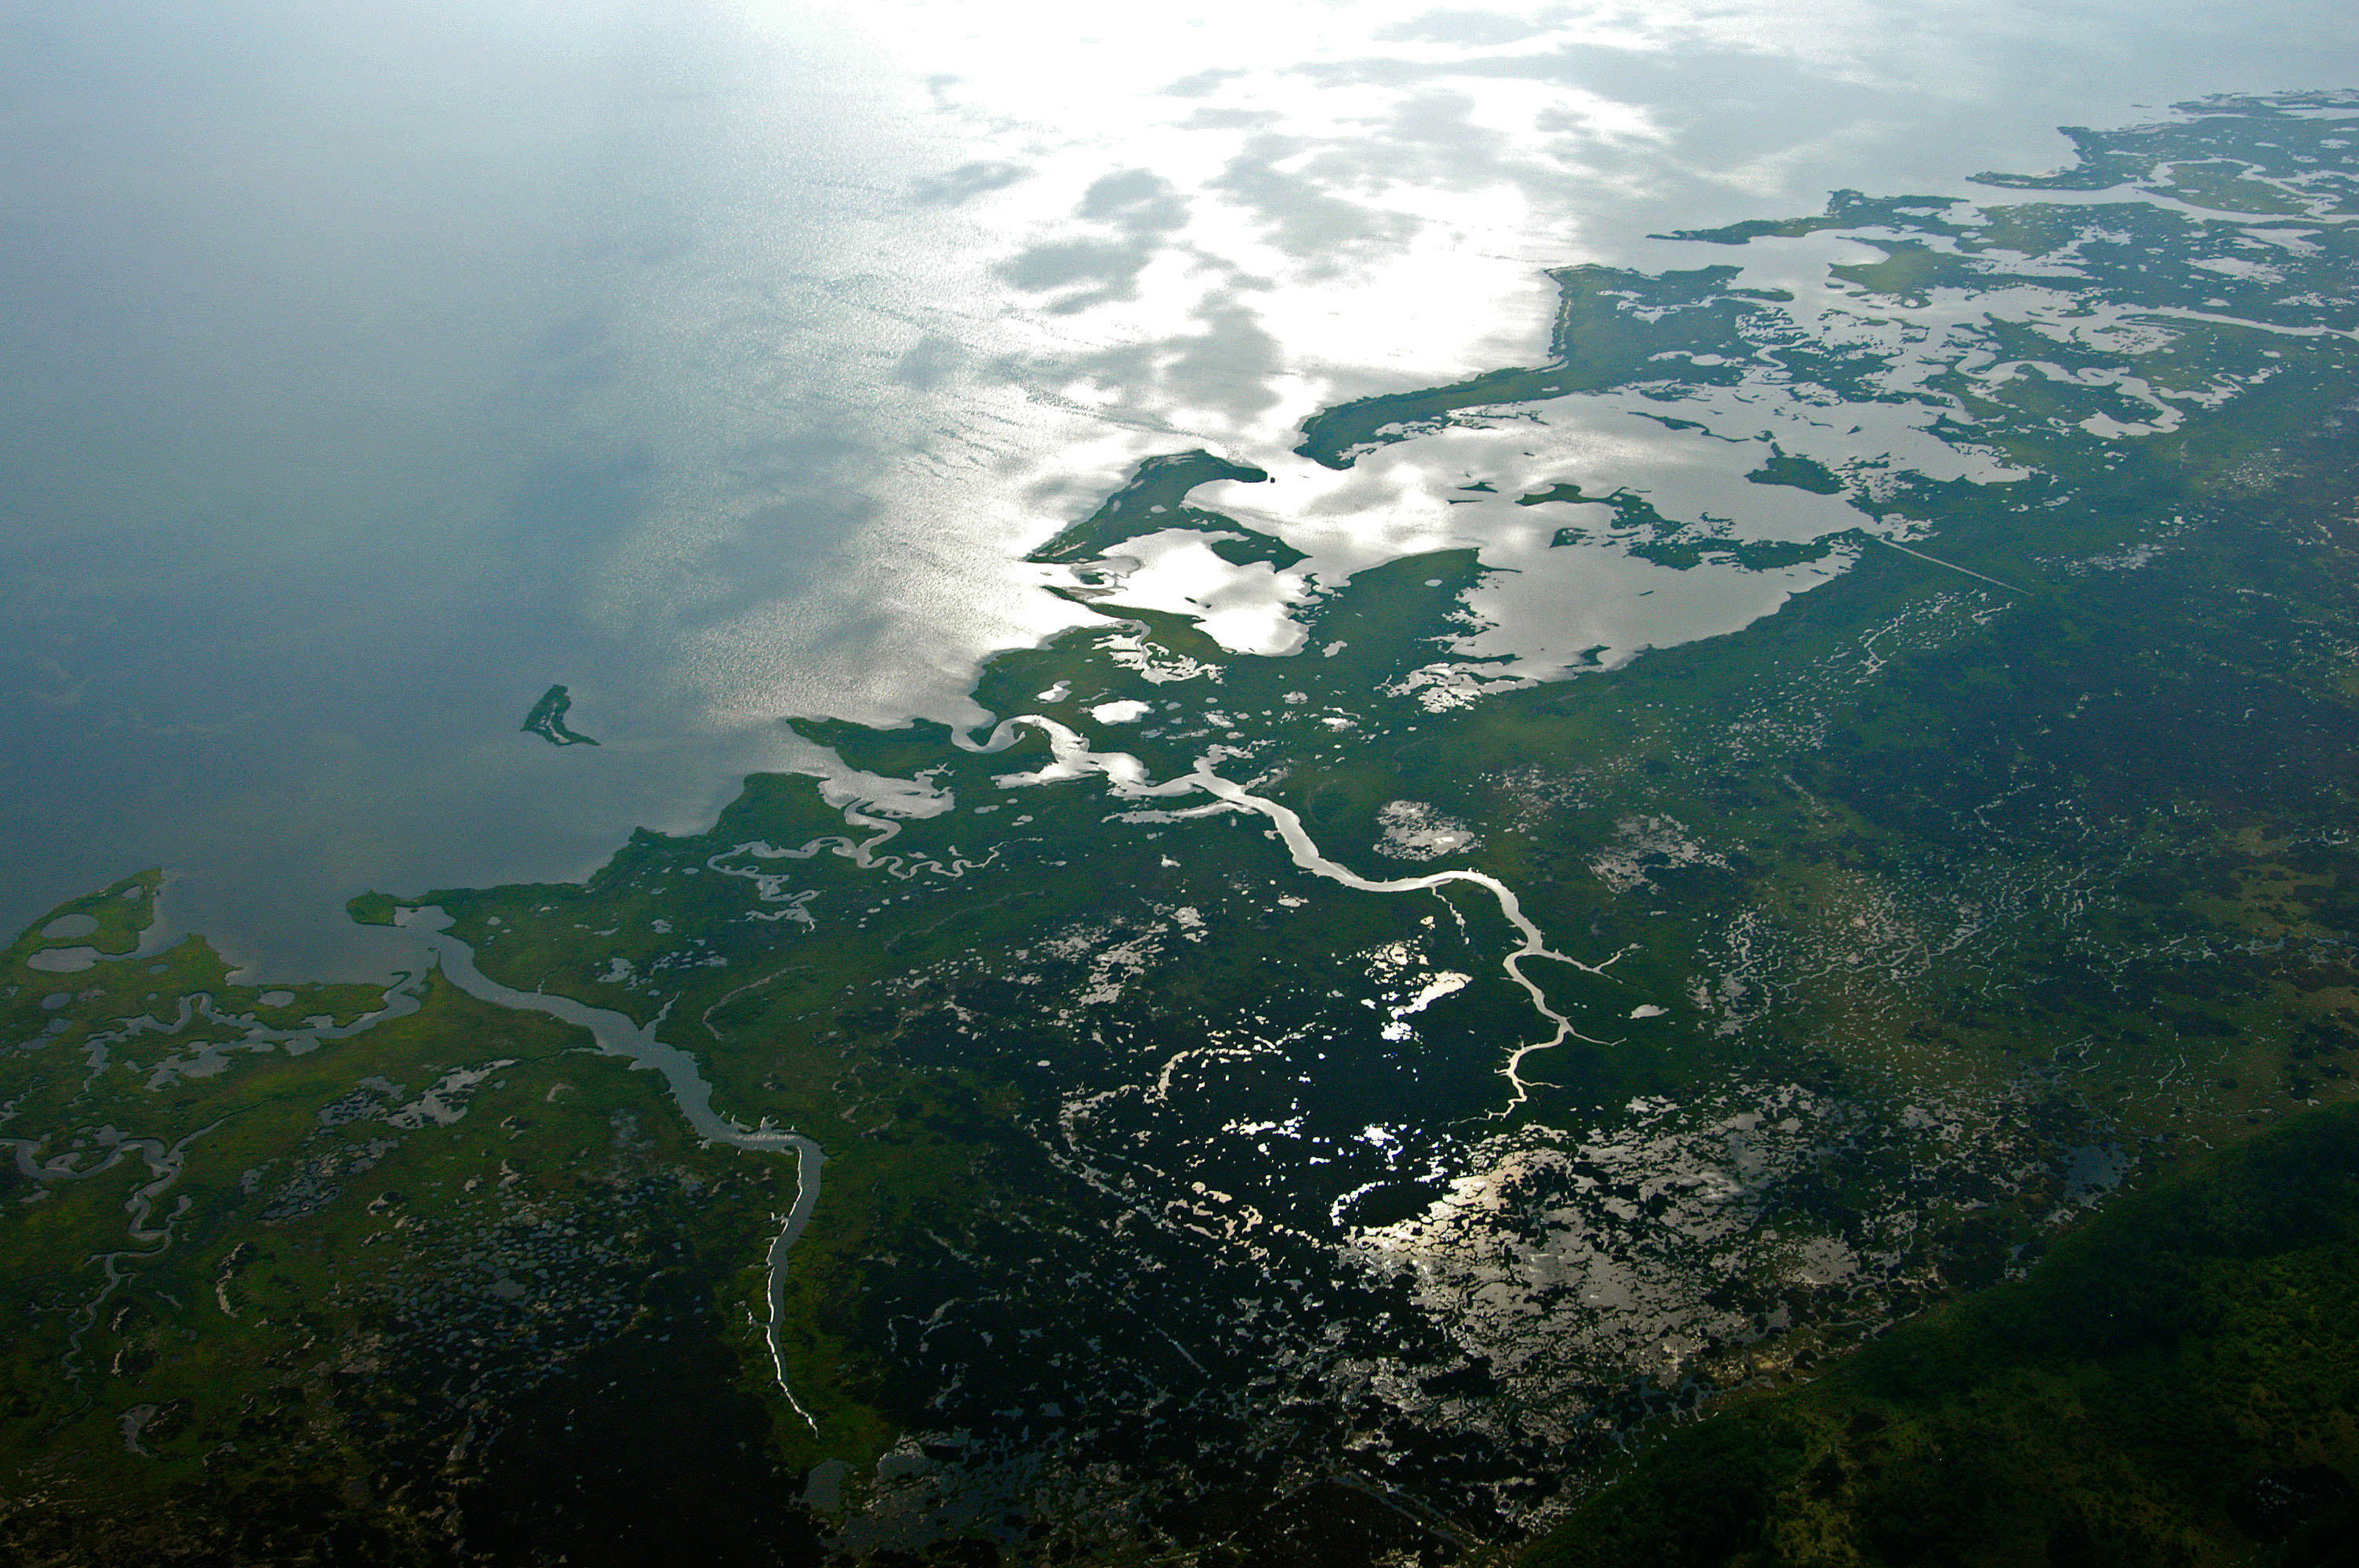 Aerial view of Chesapeake Bay wetlands